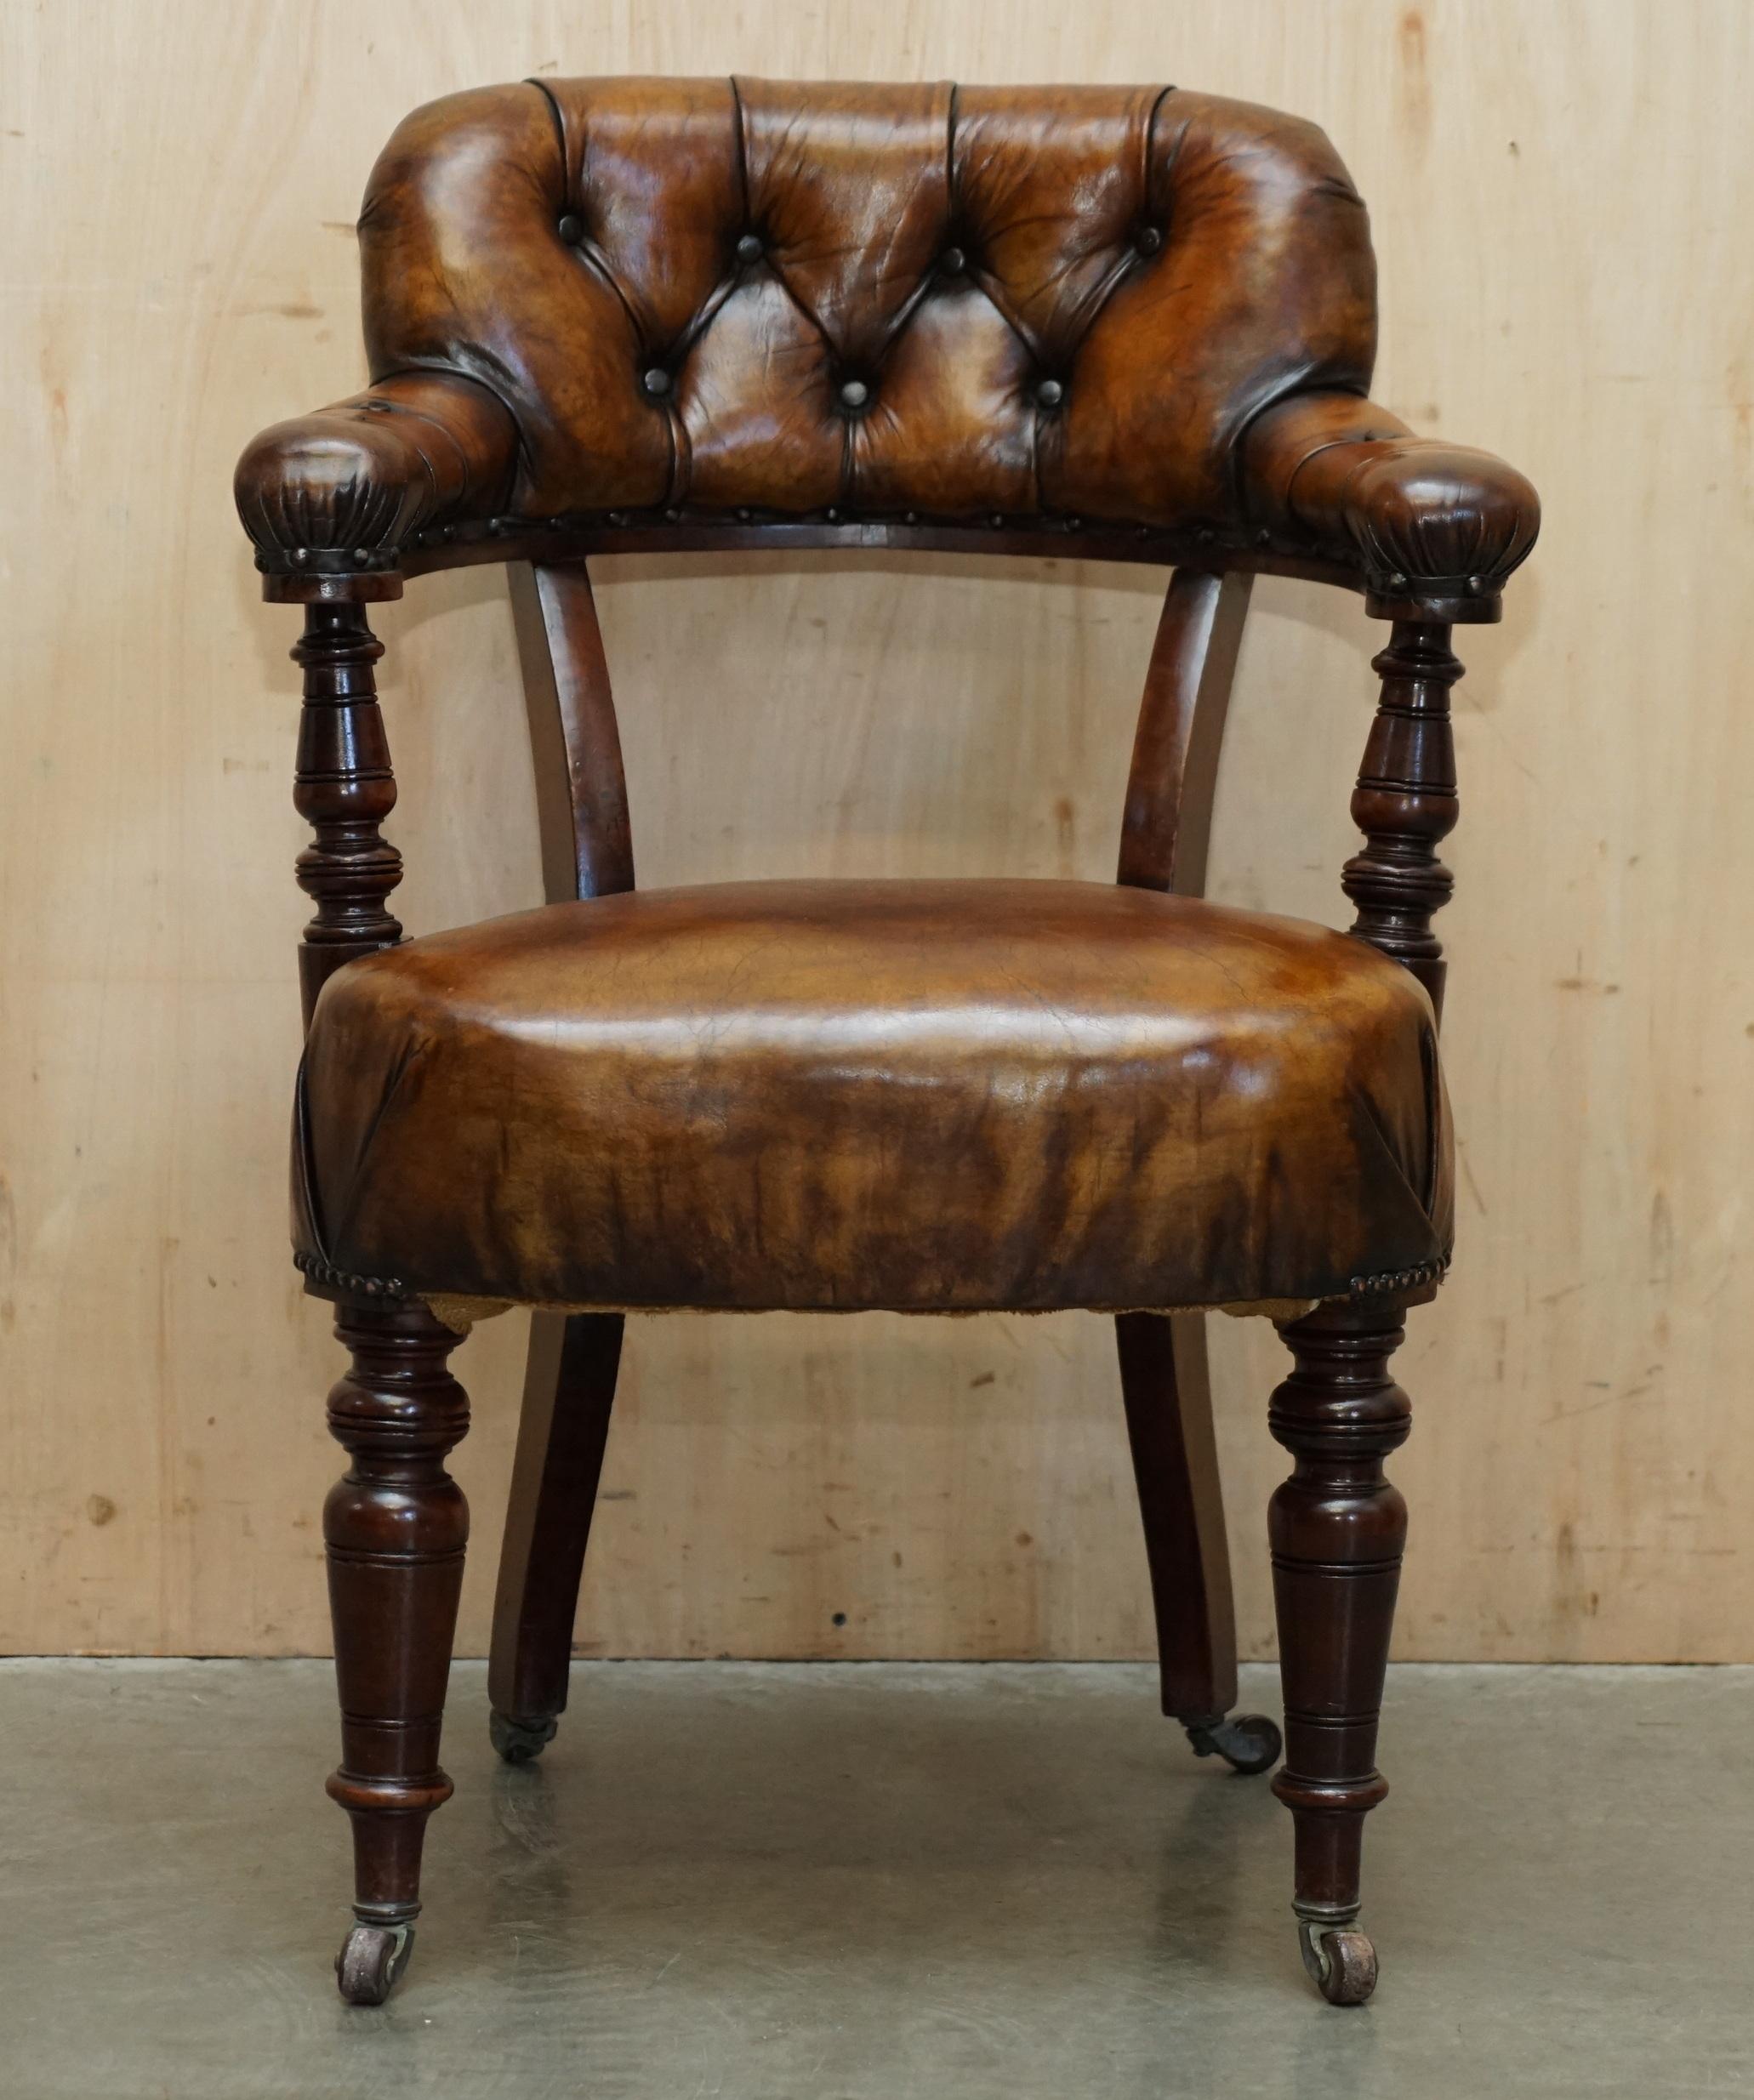 Royal House Antiques

Royal House Antiques freut sich, diesen schönen, antiken, vollständig restaurierten originalen Mahagoni-Stuhl mit handgefärbtem Chesterfield-Leder um 1830 zum Verkauf anzubieten.

Bitte beachten Sie die Lieferkosten aufgeführt